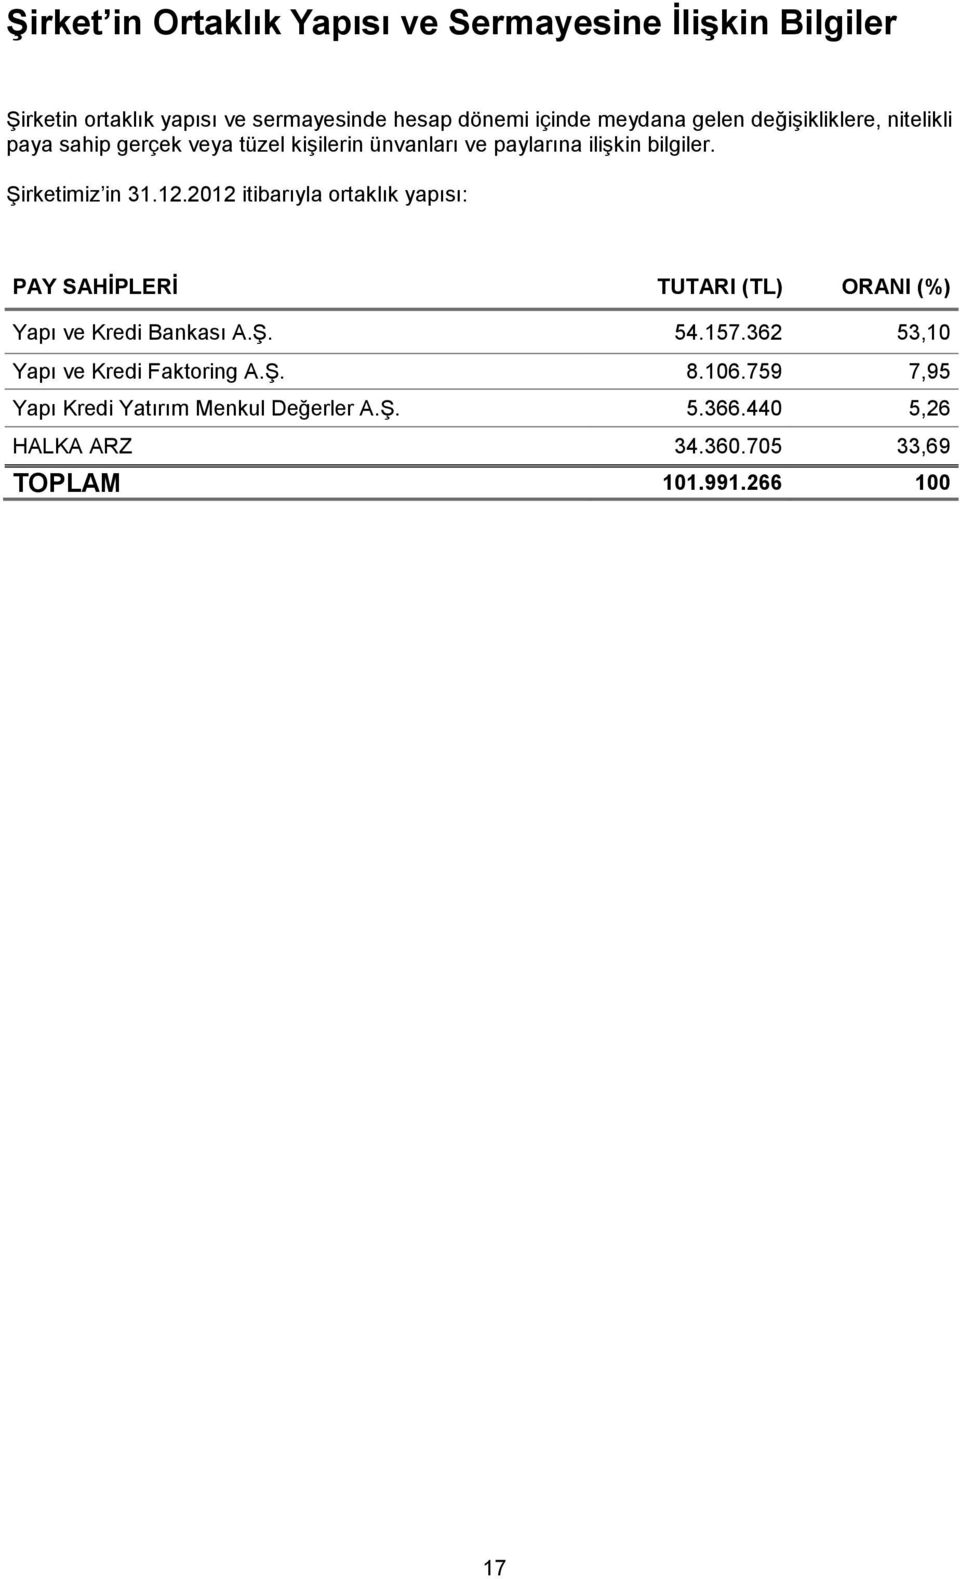 12.2012 itibarıyla ortaklık yapısı: PAY SAHĠPLERĠ TUTARI (TL) ORANI (%) Yapı ve Kredi Bankası A.ġ. 54.157.